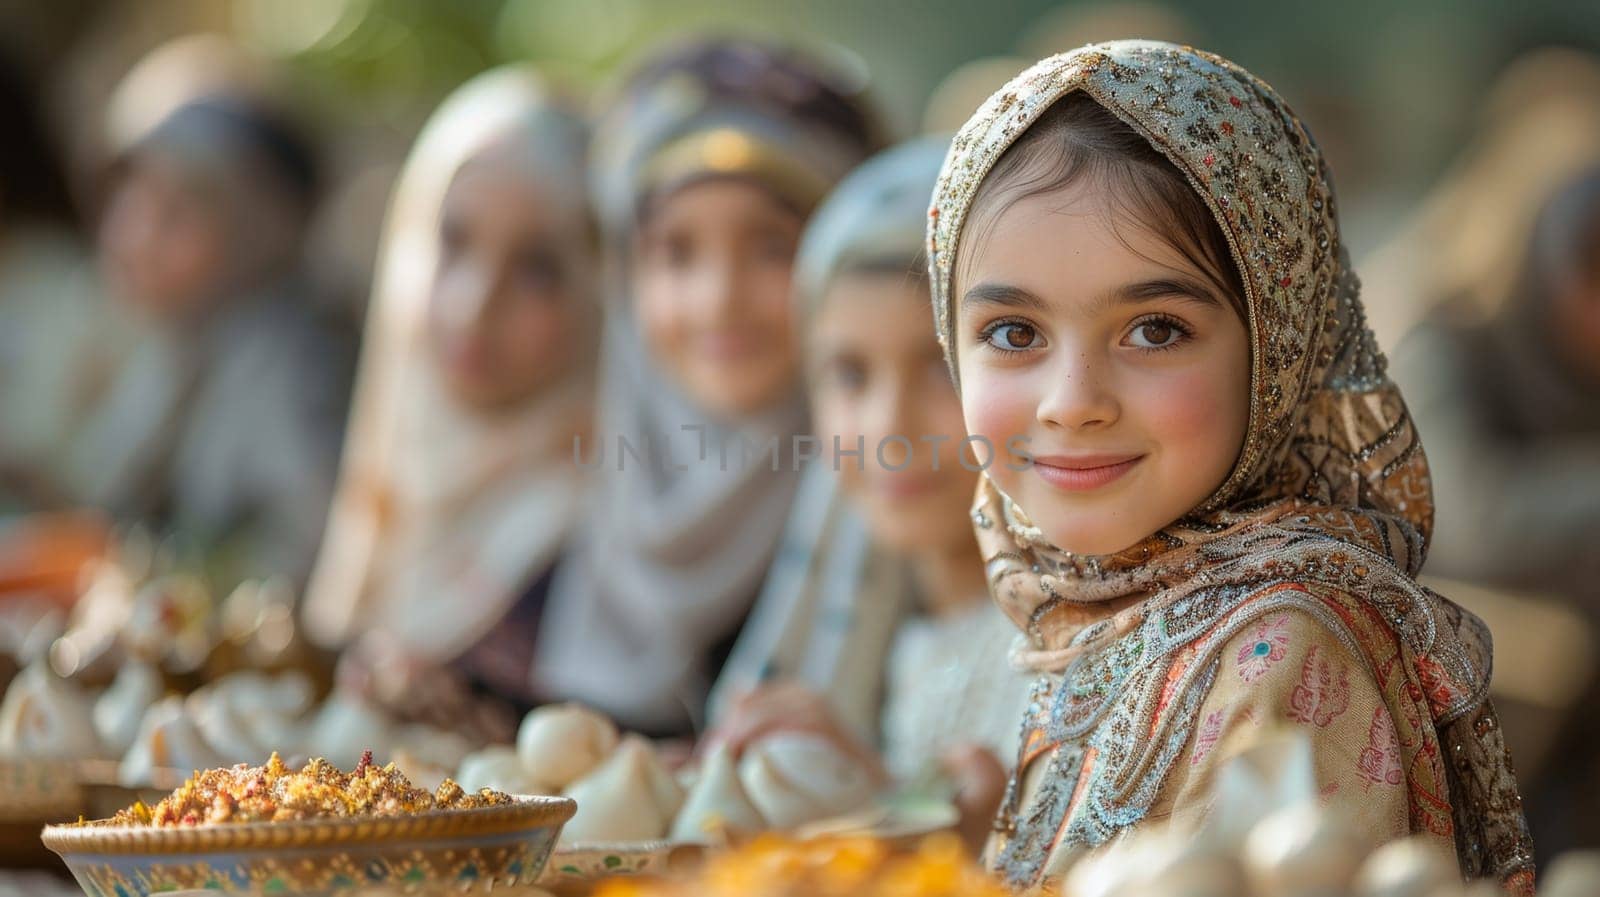 Young Muslim women on Eid al-Adha holiday.